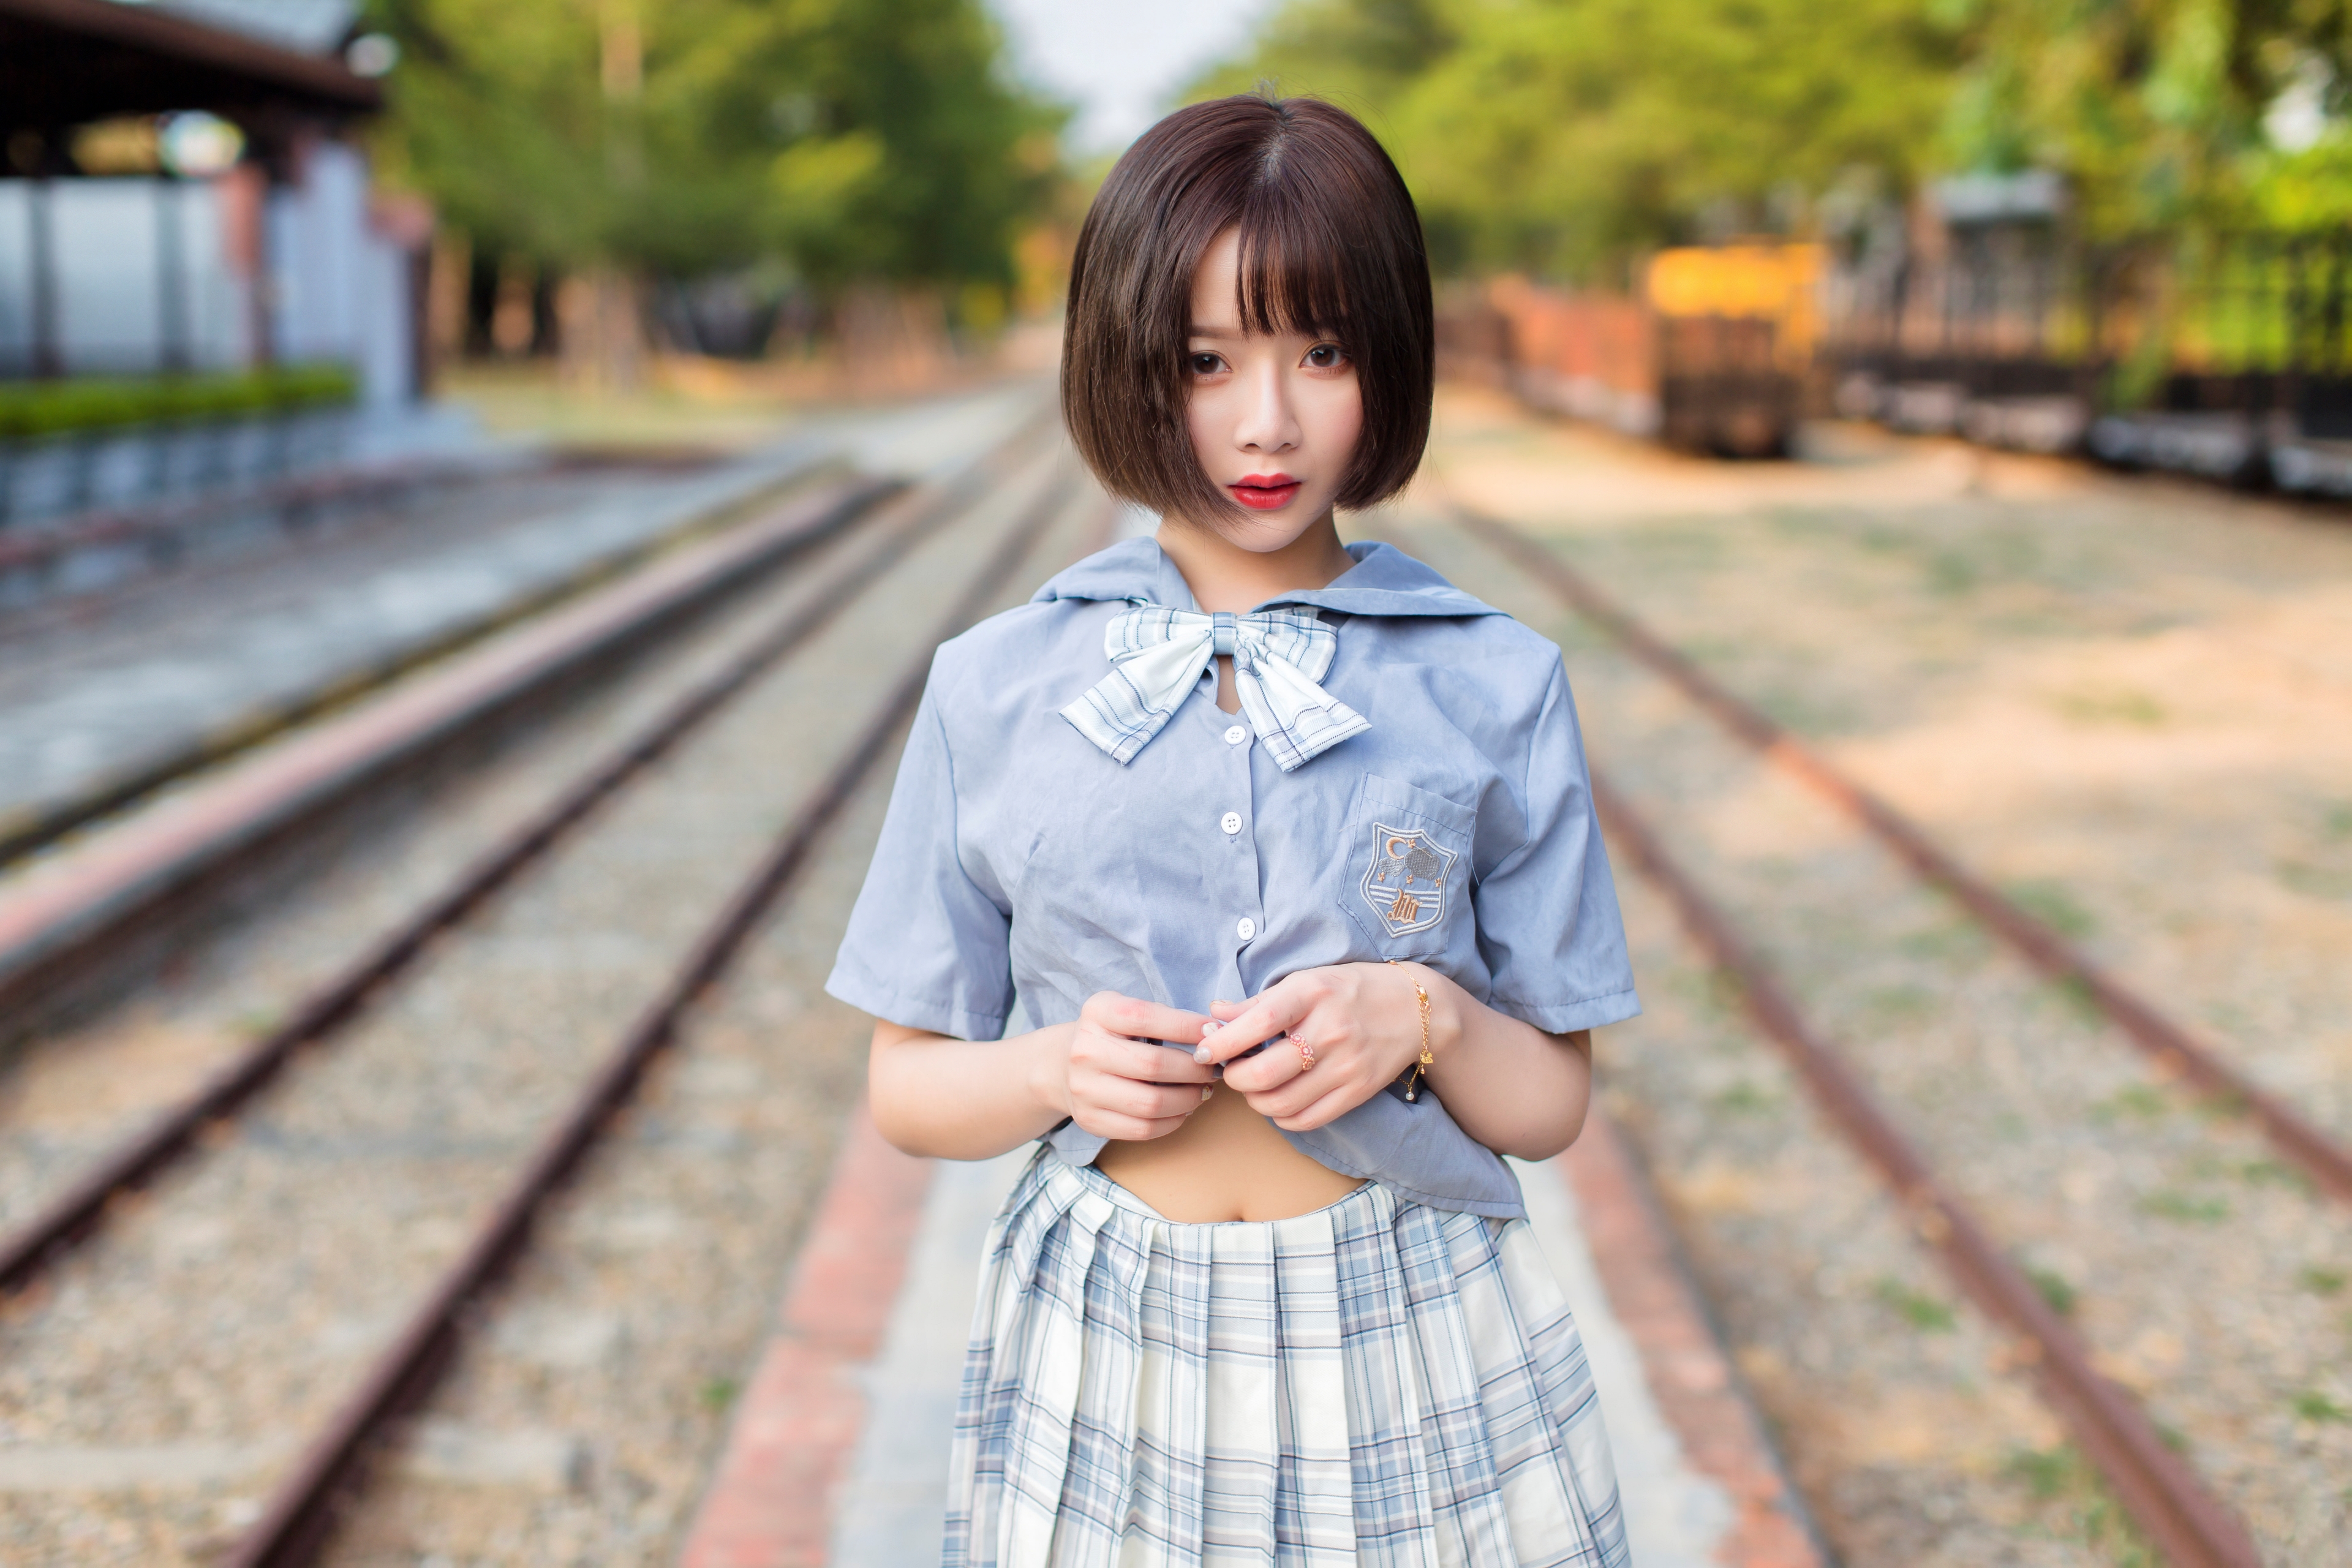 Winnie Qian Women Model Asian Cosplay Schoolgirl JK Women Outdoors Brunette Railway Looking At Viewe 3840x2560